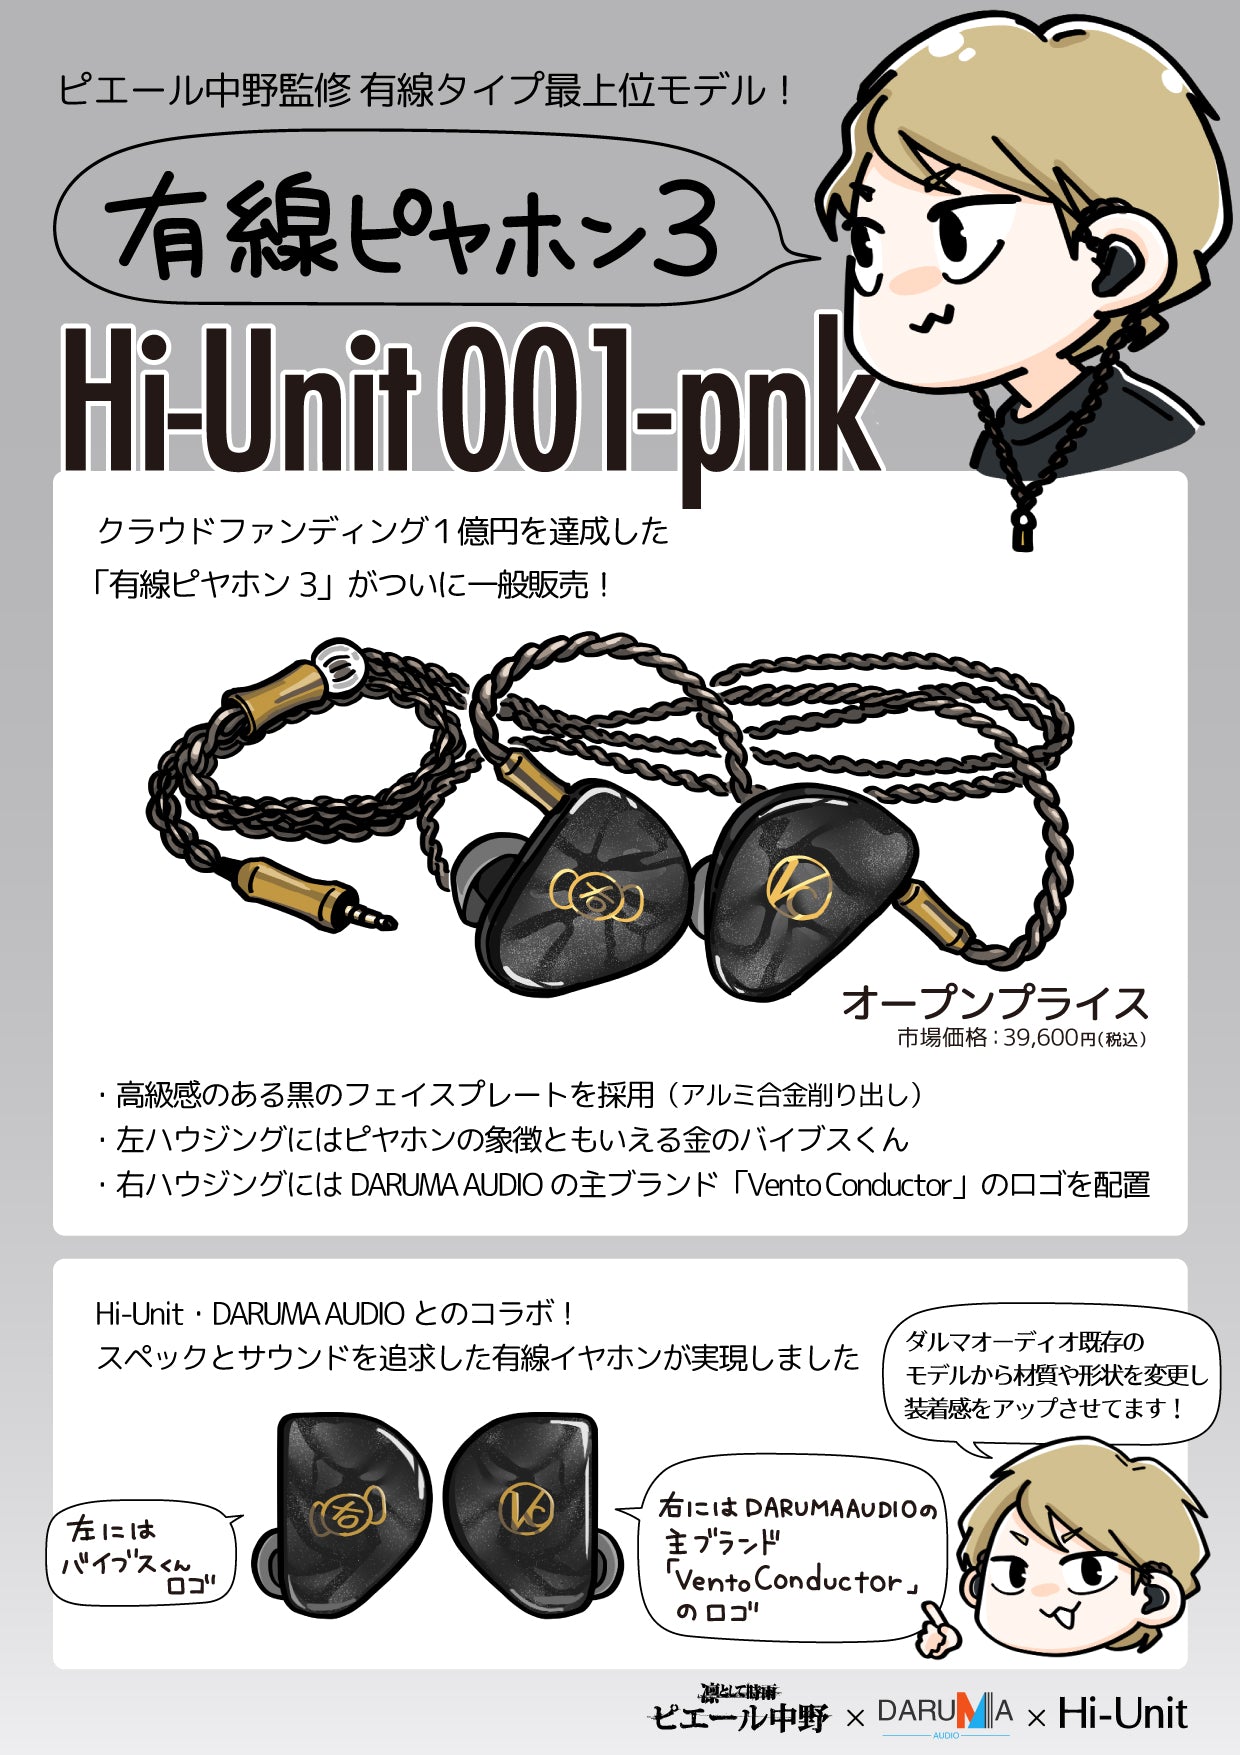 Hi-Unit 001 pink 有線ピヤホン3(特典ケーブル2本付き)